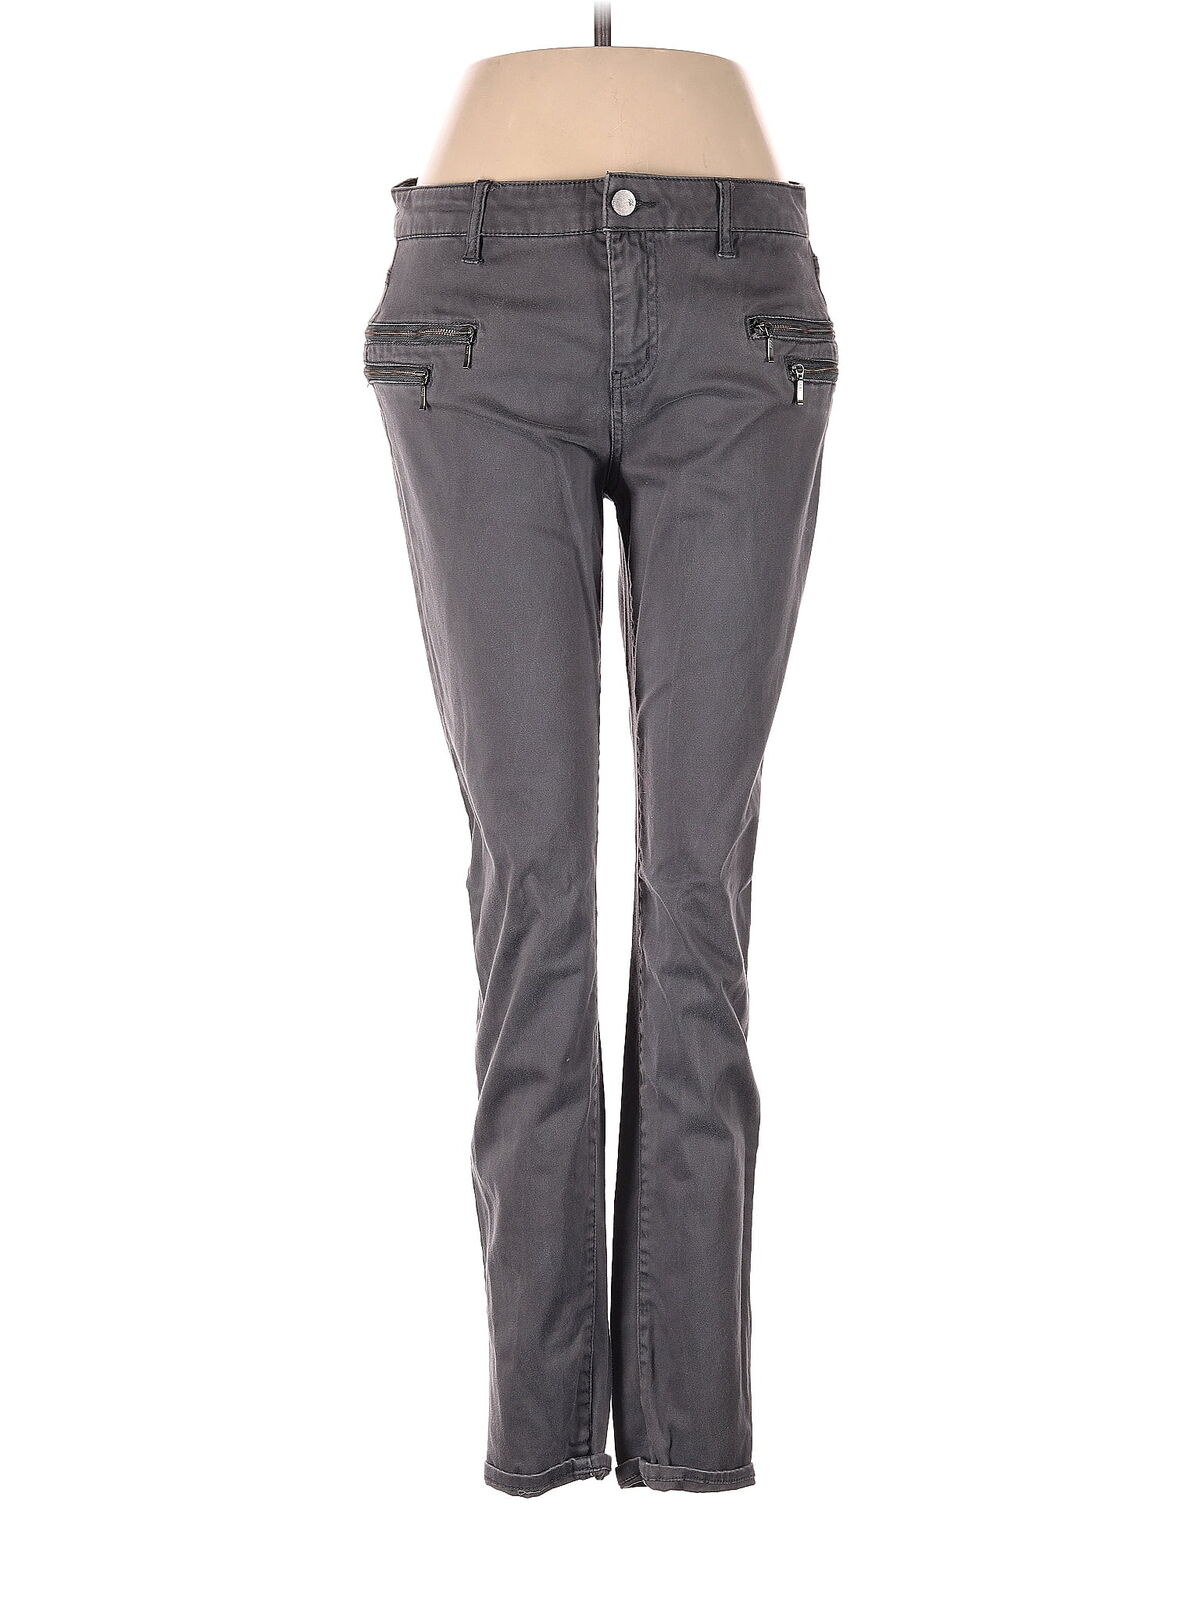 Soho JEANS NEW YORK & COMPANY Women Gray Jeans 4 - image 1